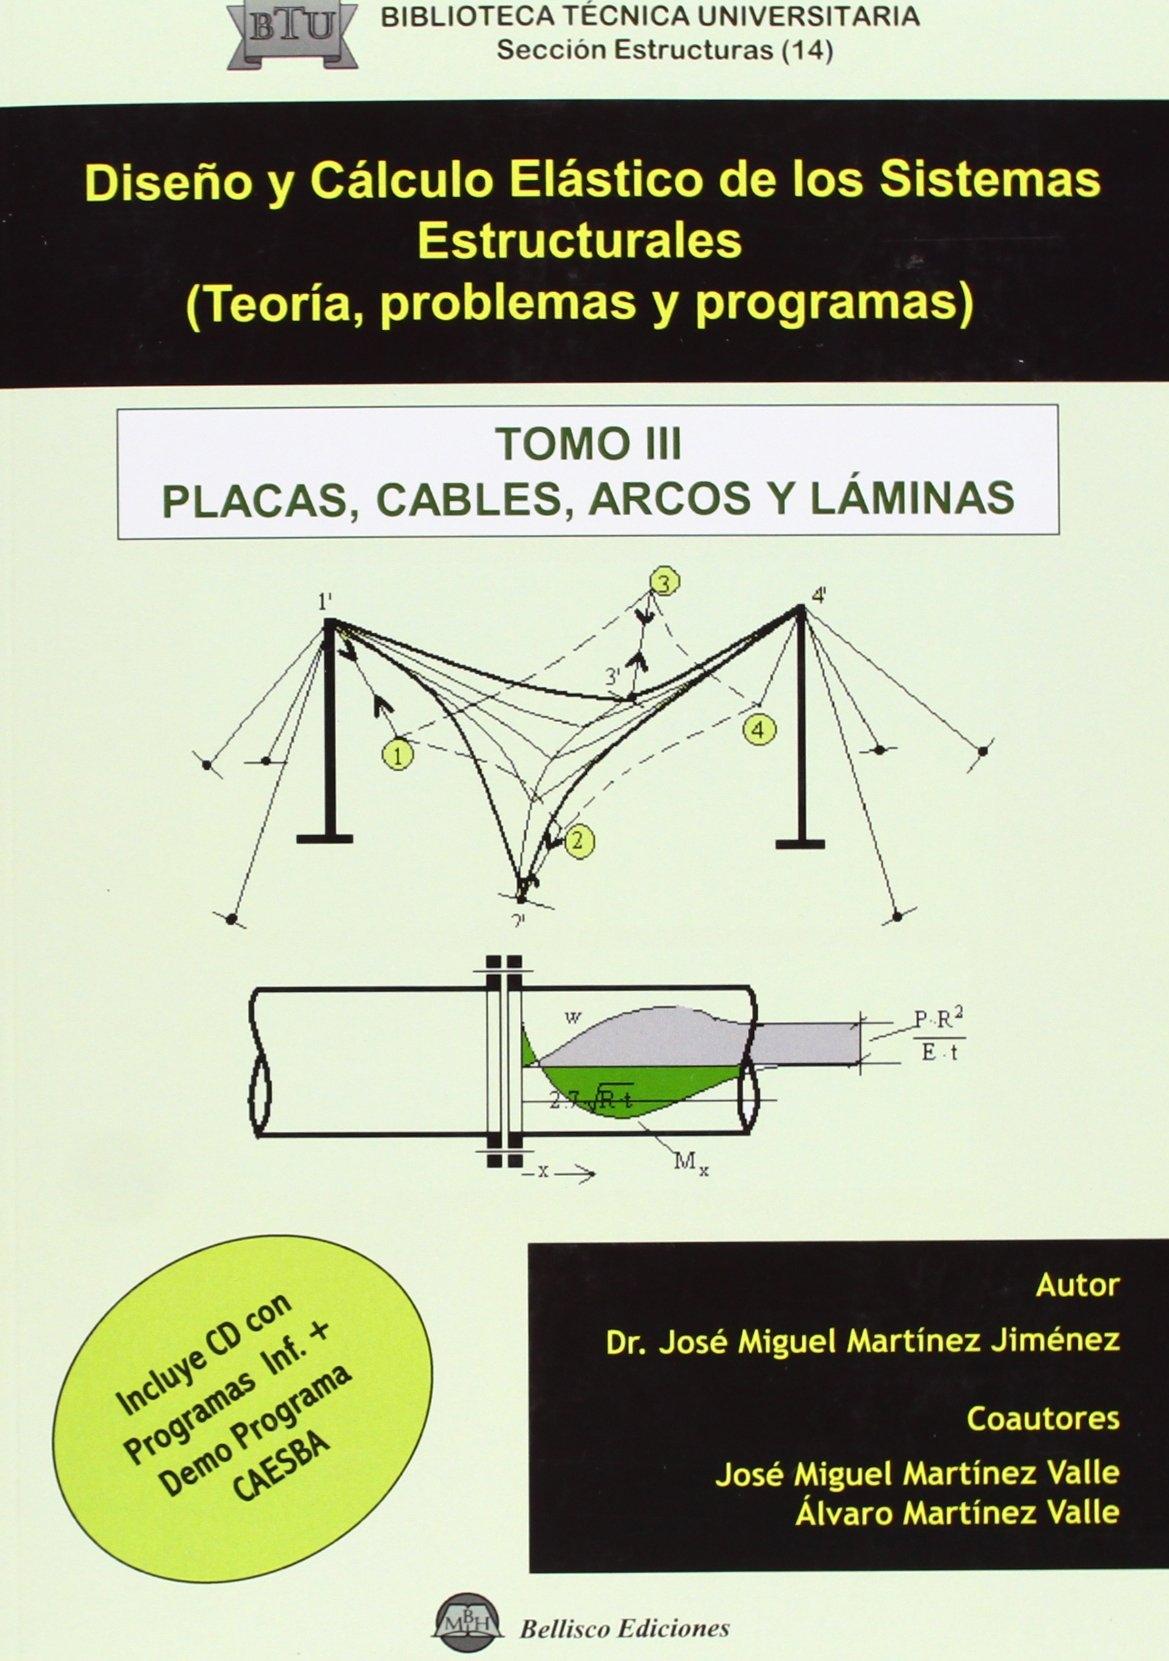 DISEÑO Y CALCULO ELASTICO (T.3) SIST. ESTR. TEORIA PROBLEMAS "PLACAS, CABLES, ARCOS Y LÁMINAS"